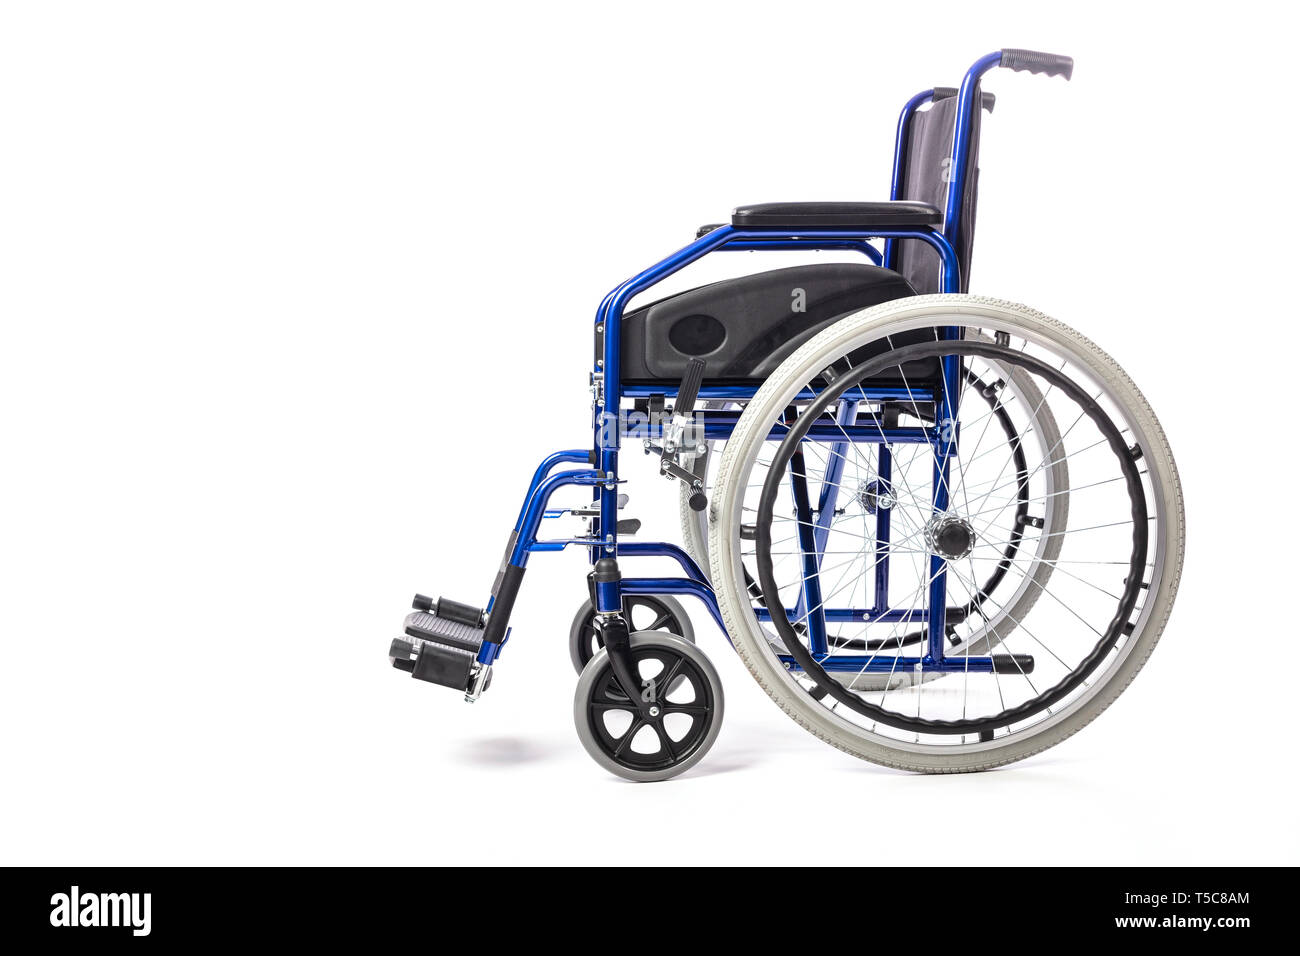 Dettaglio di un classico della sedia a rotelle per la disabilità fisica su uno sfondo bianco. Concetto di cure ospedaliere e la disabilità, vista laterale Foto Stock